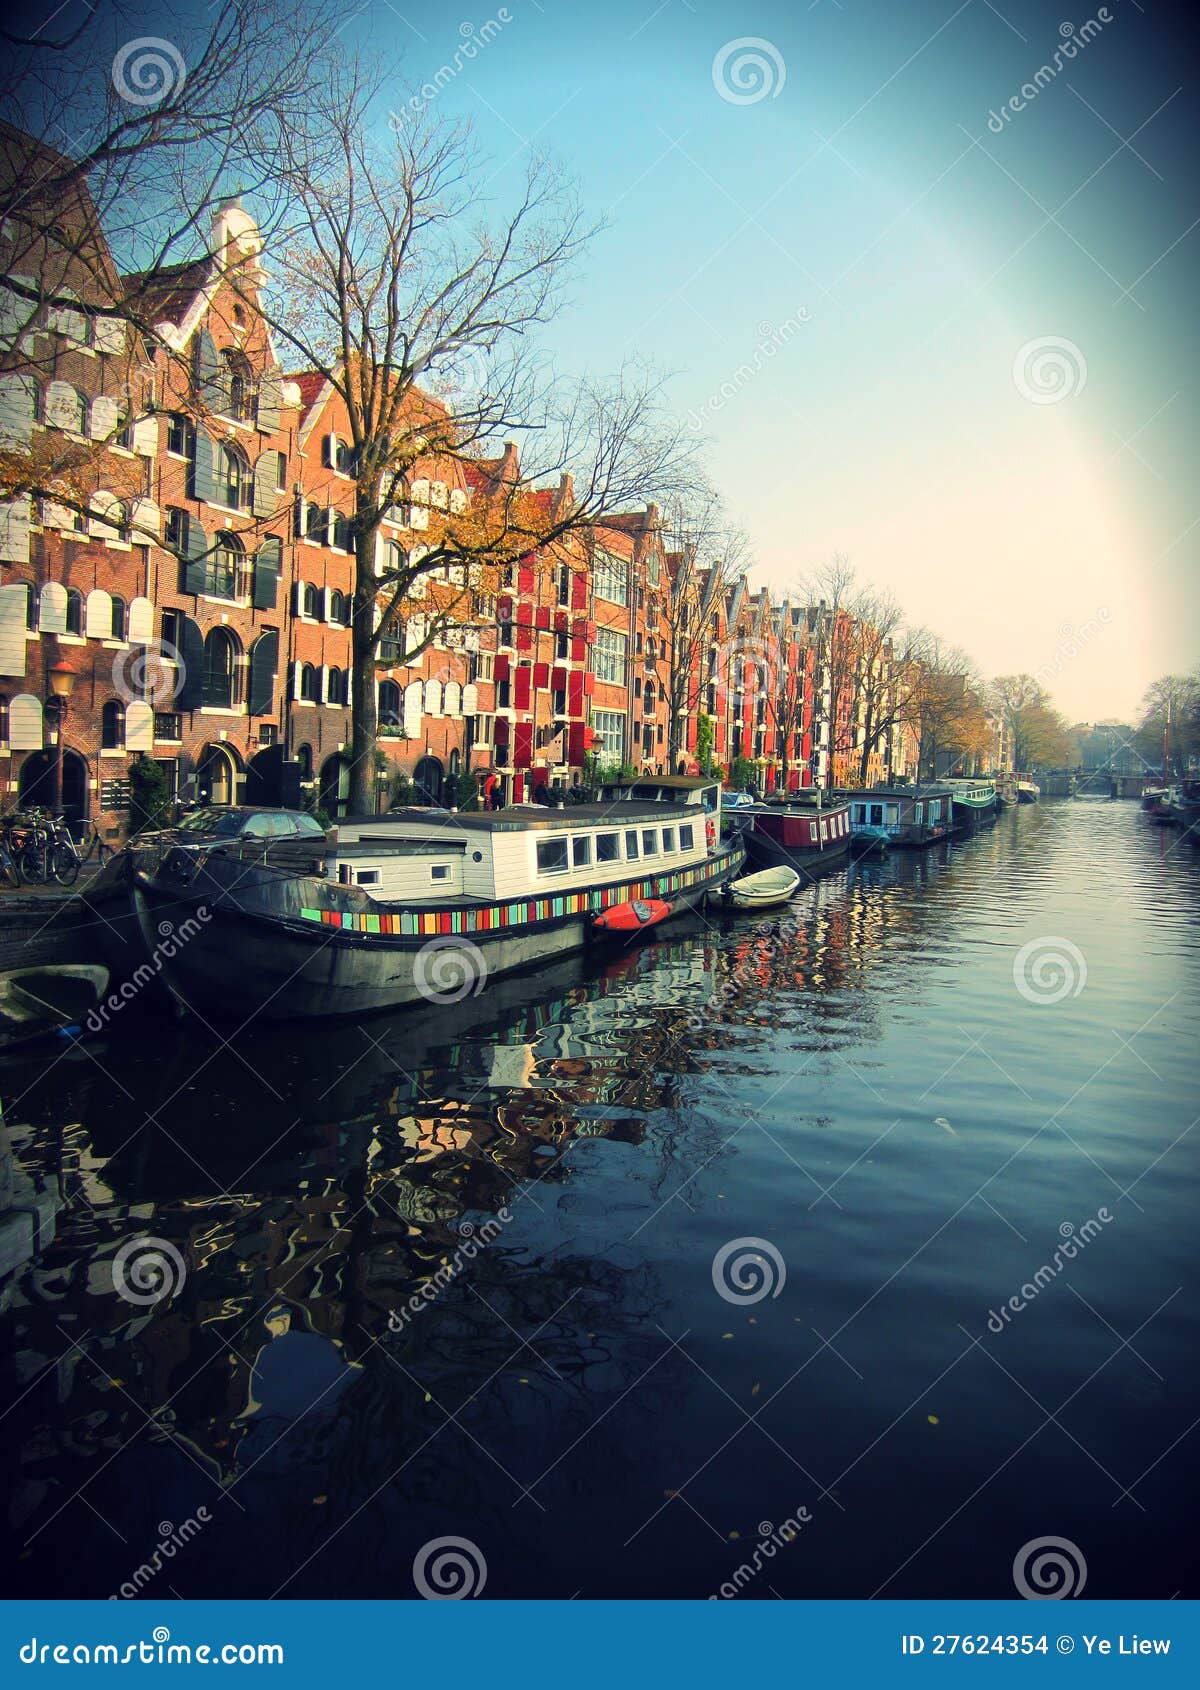 Tiro cénico bonito do canal de Amsterdão com casas de barco.